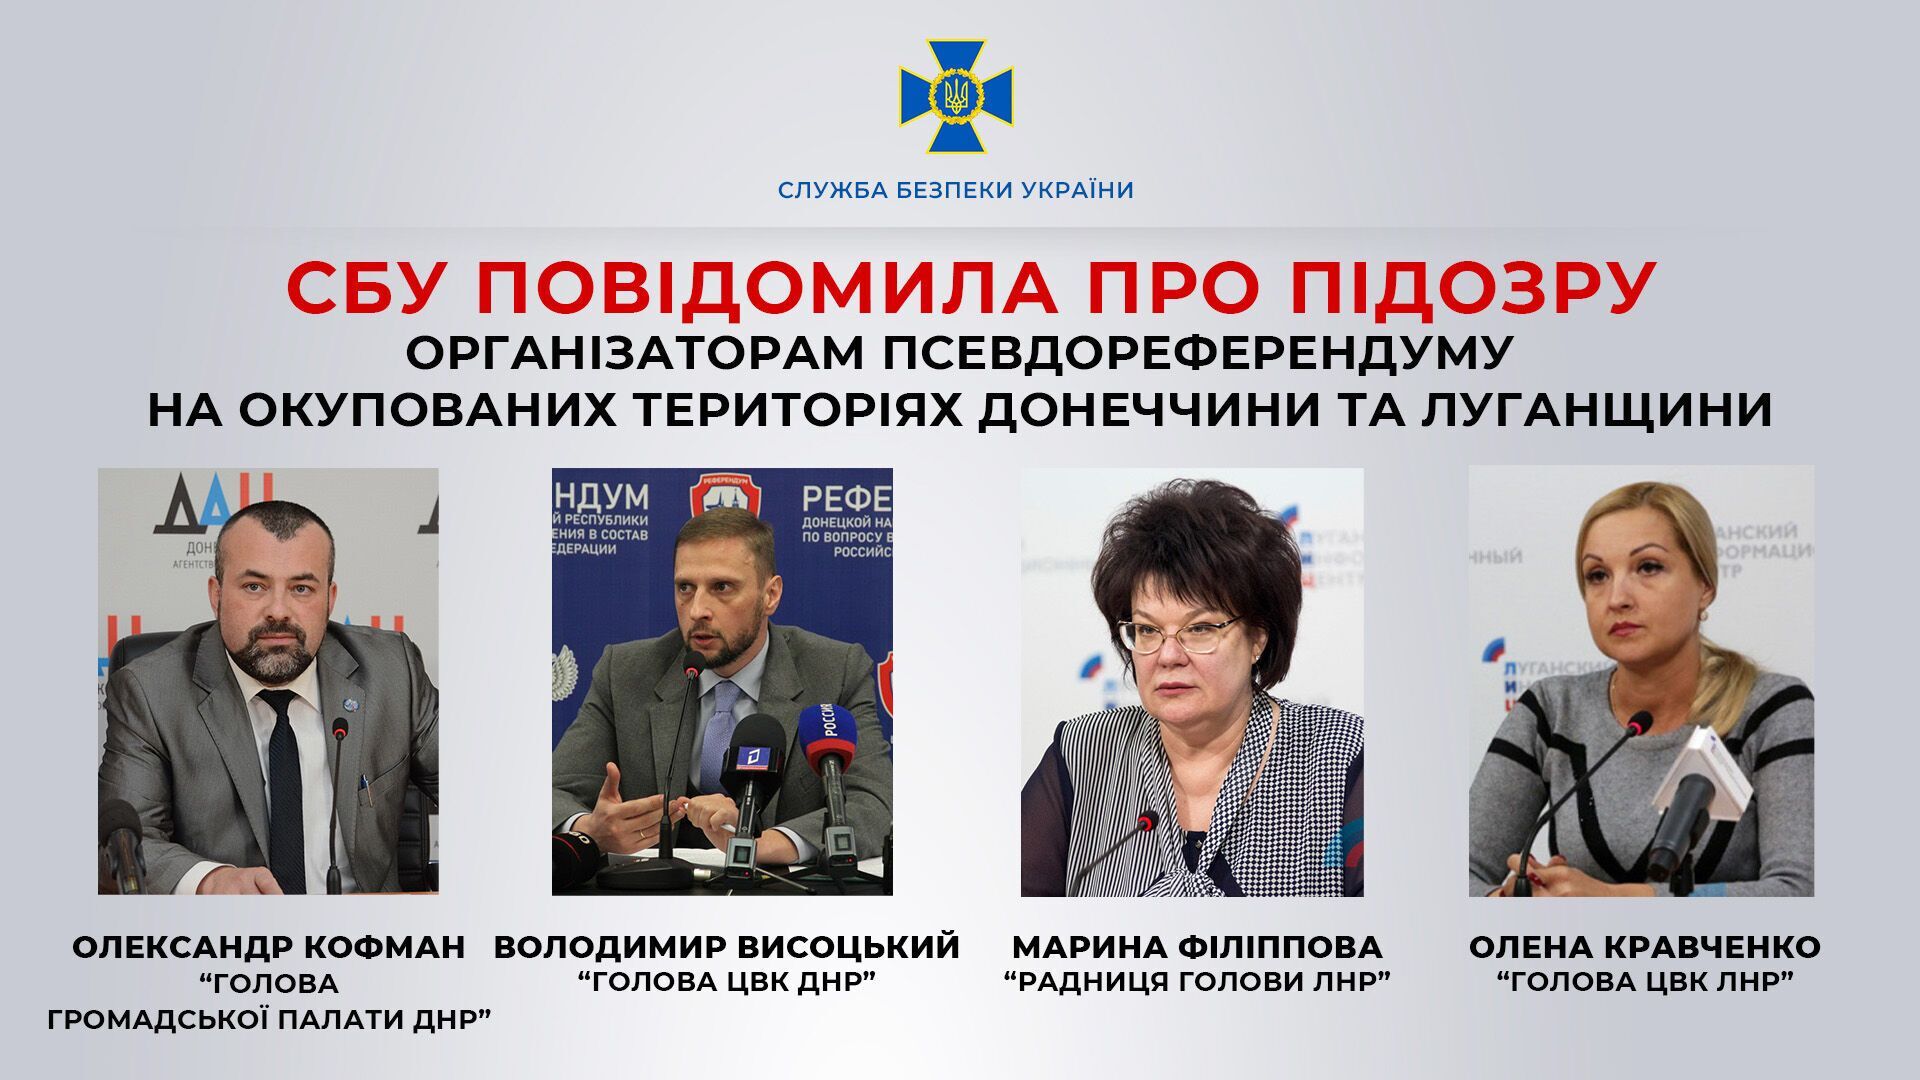 СБУ повідомила про підозру організаторам псевдореферендуму на окупованих Донеччині та Луганщині. Фото